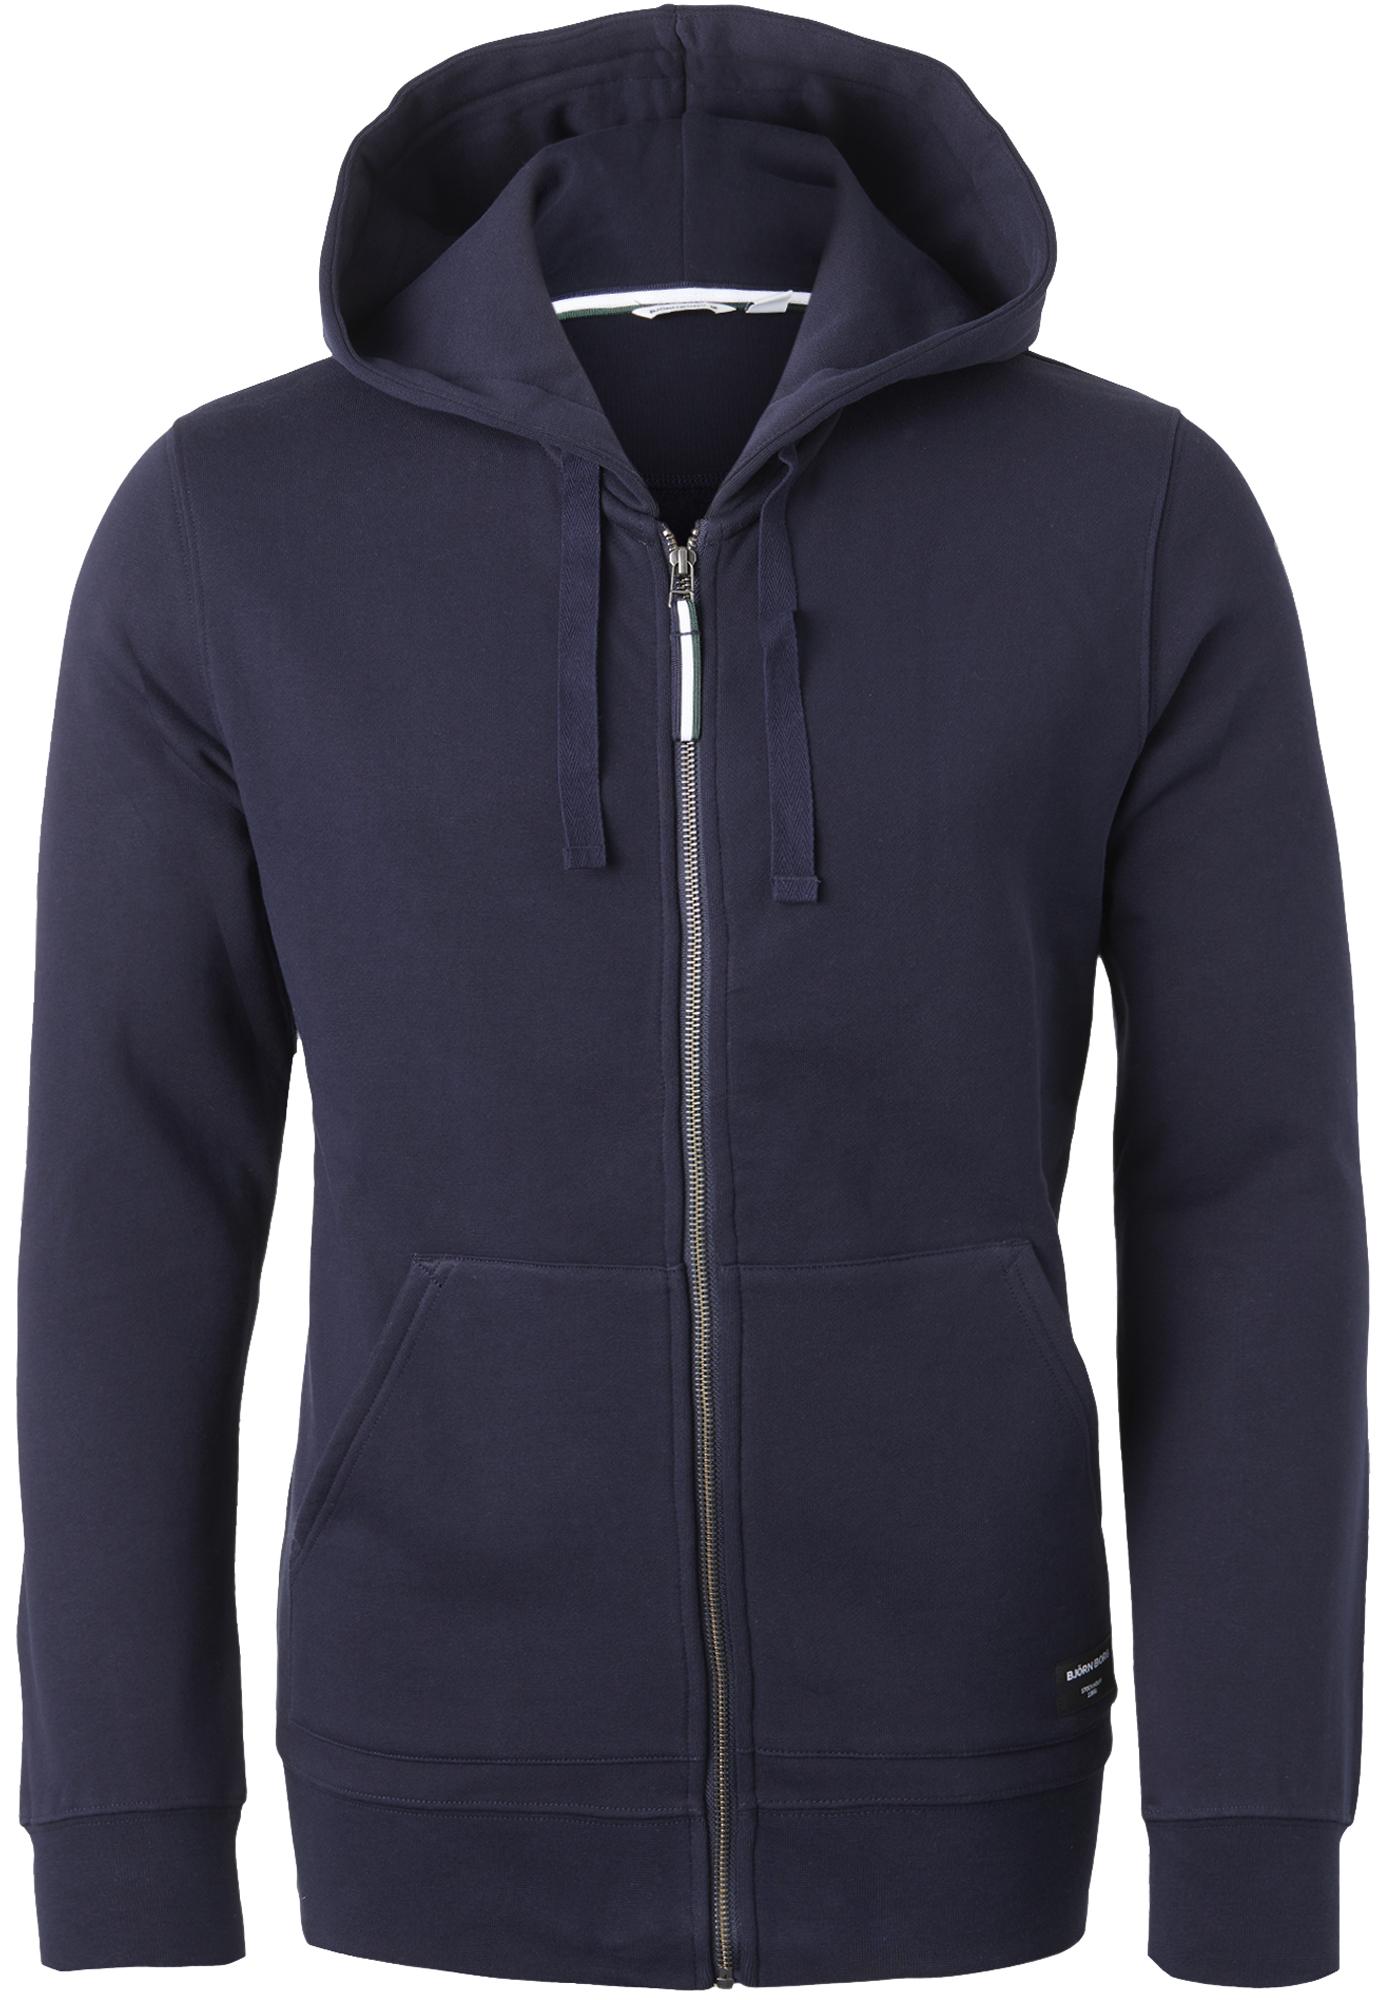 Bjorn hoodie jacket, heren sweatvest dik, blauw - SALE tot 50% korting - Gratis verzending retour